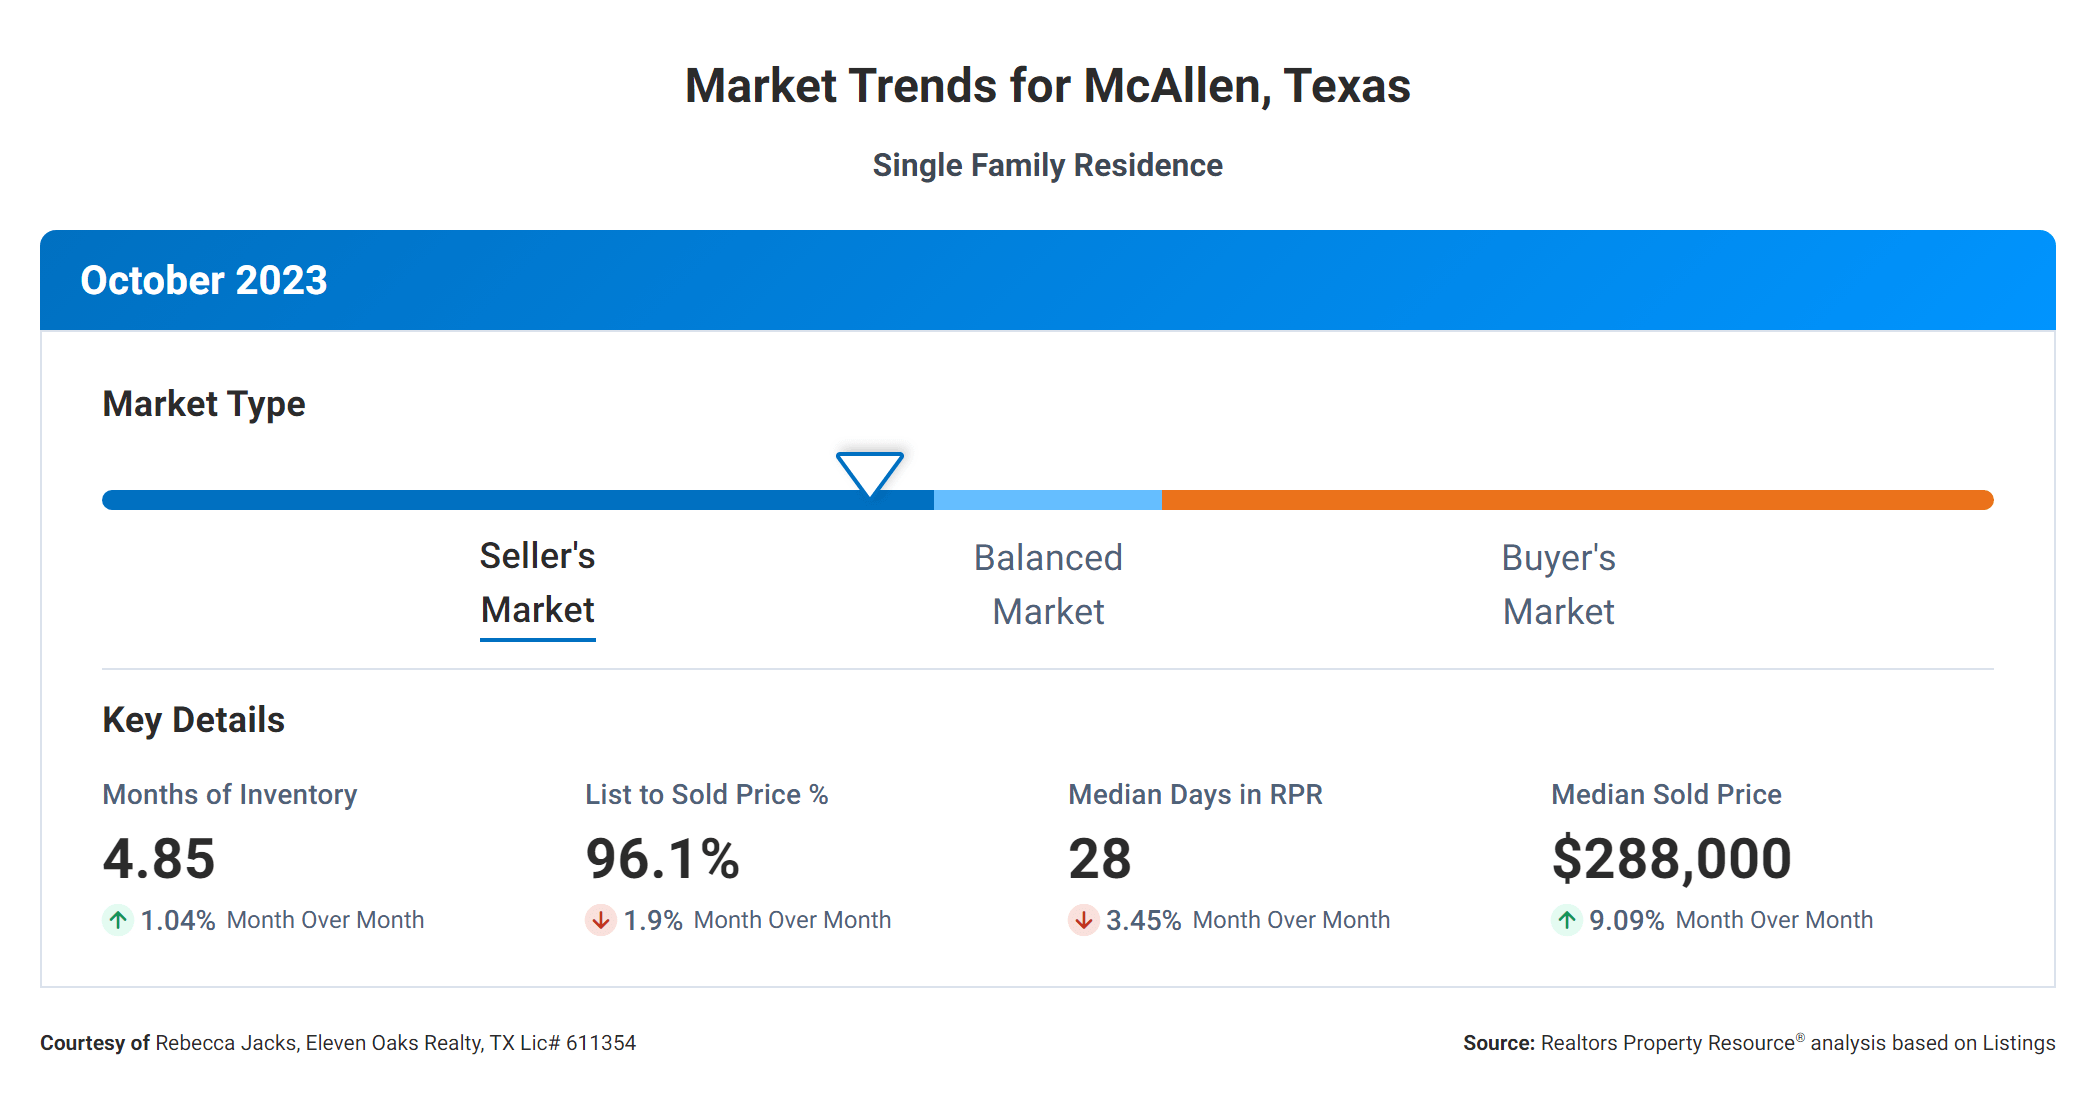 October 2023 market trends for McAllen, TX